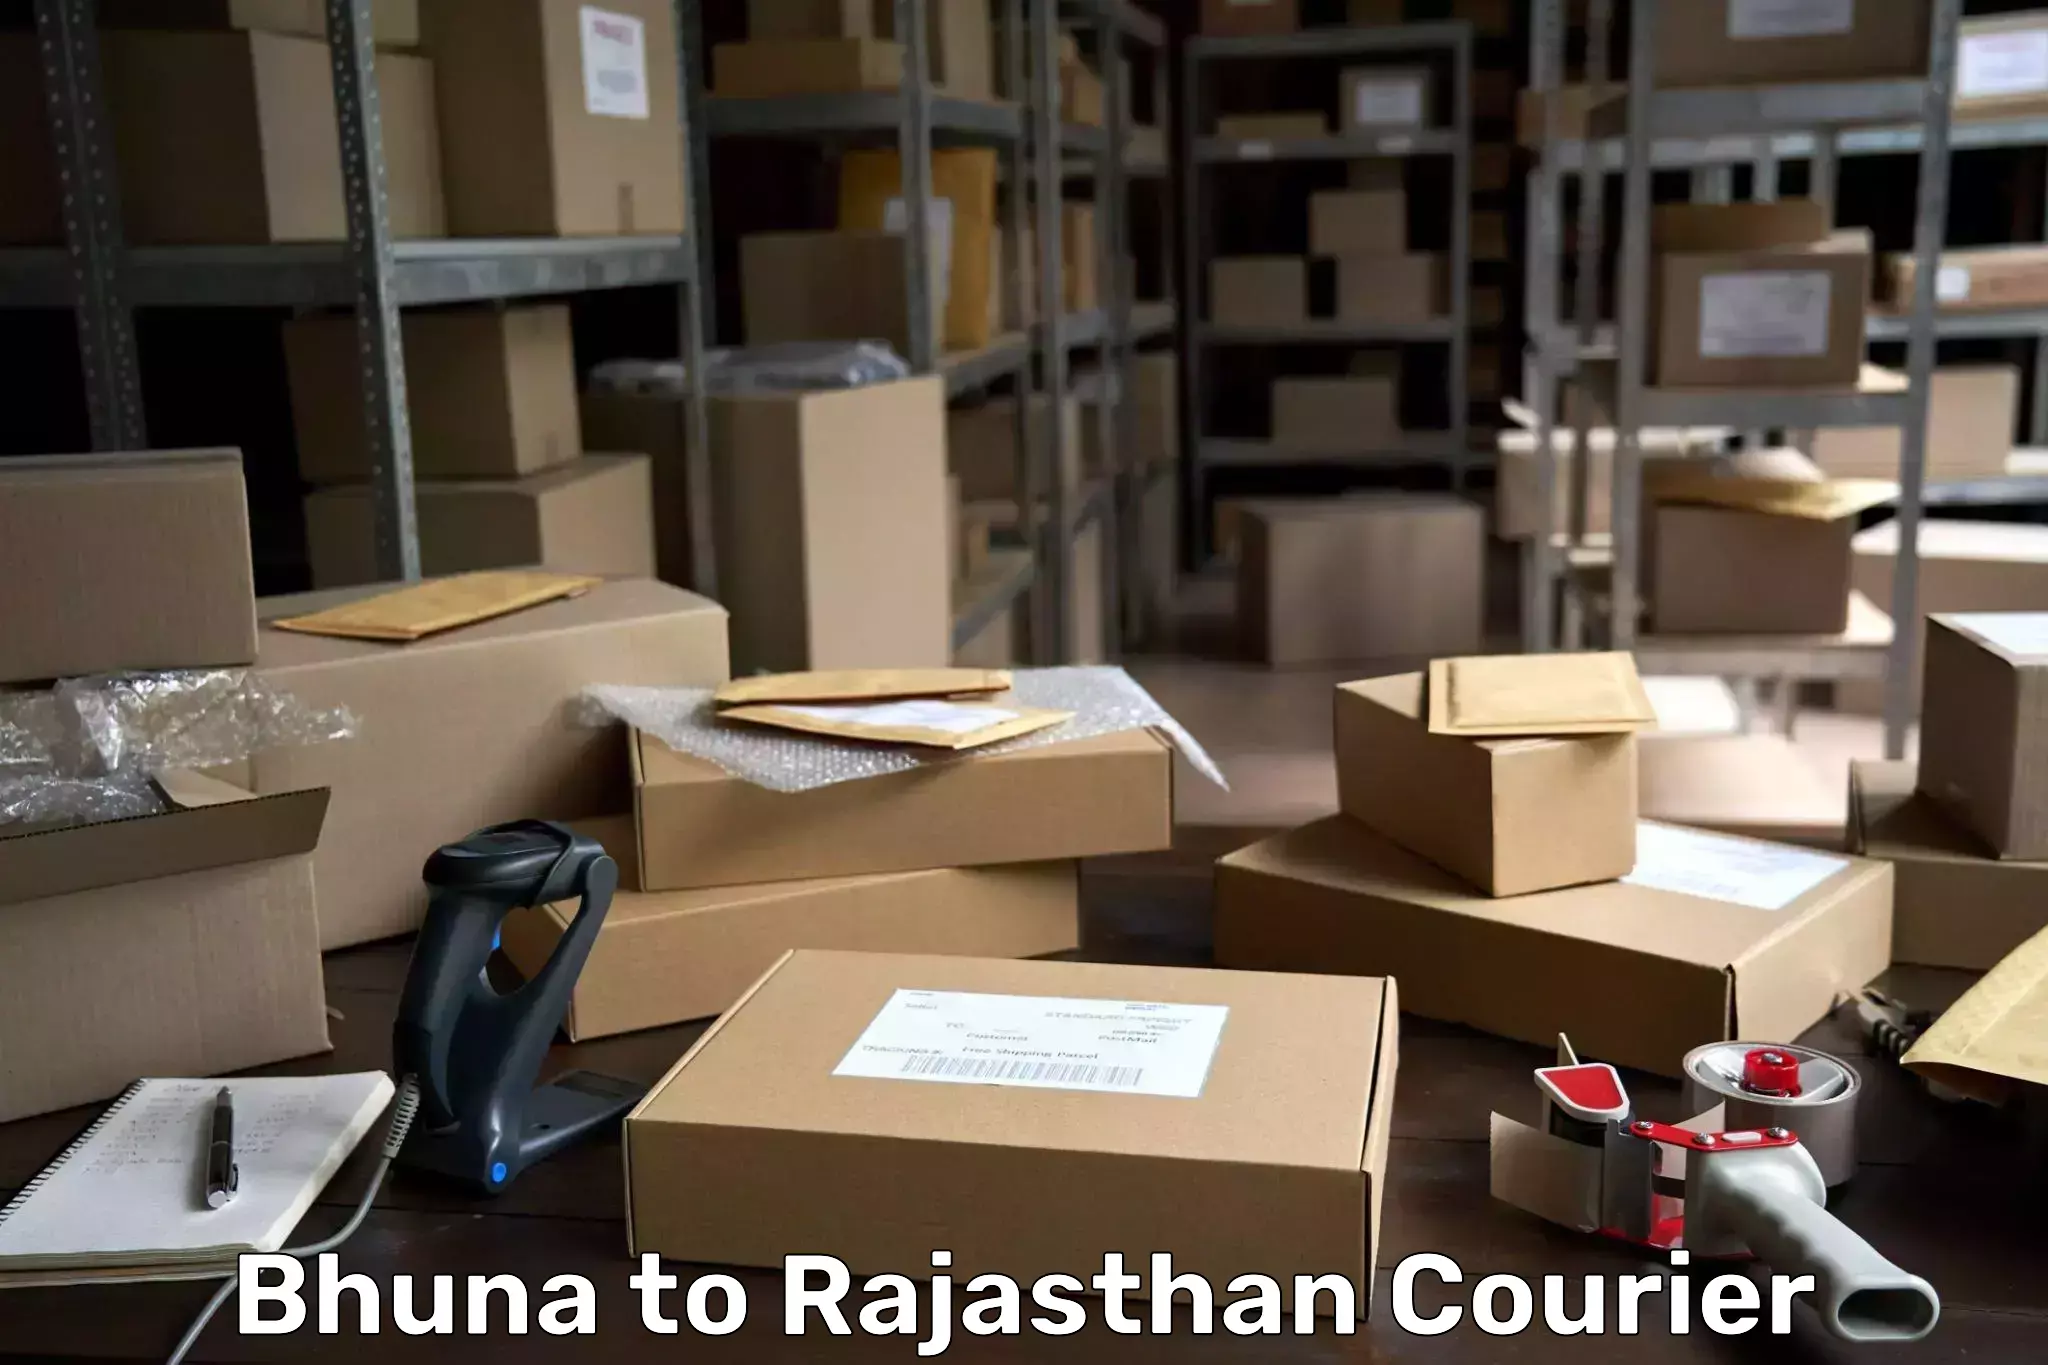 Global logistics network Bhuna to Rajasthan